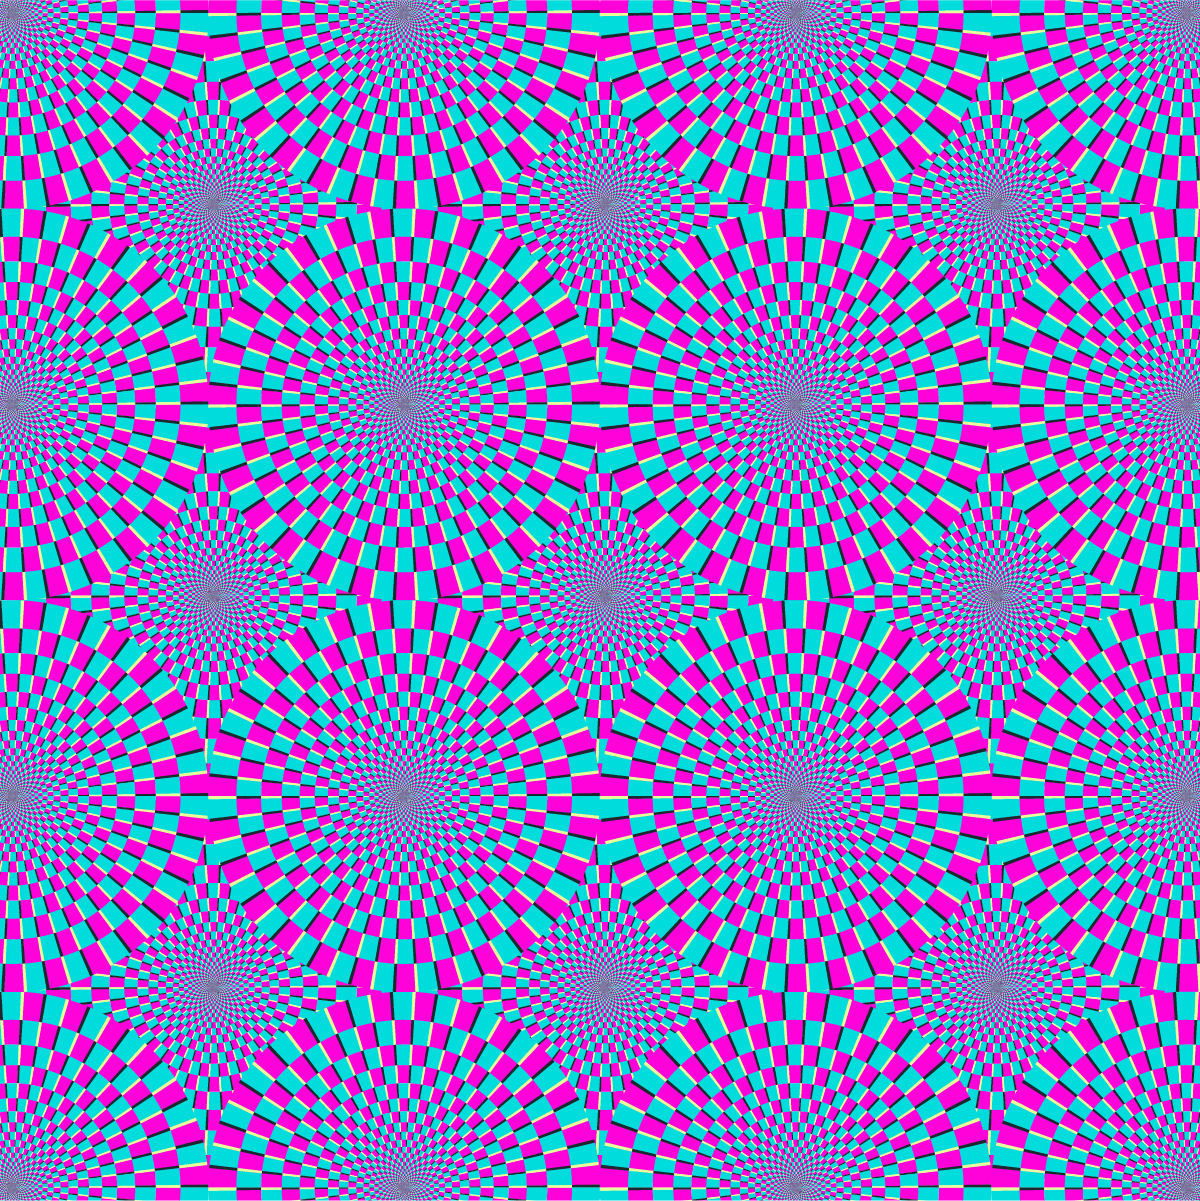 Quatro ilusões de óptica e a ciência por trás delas